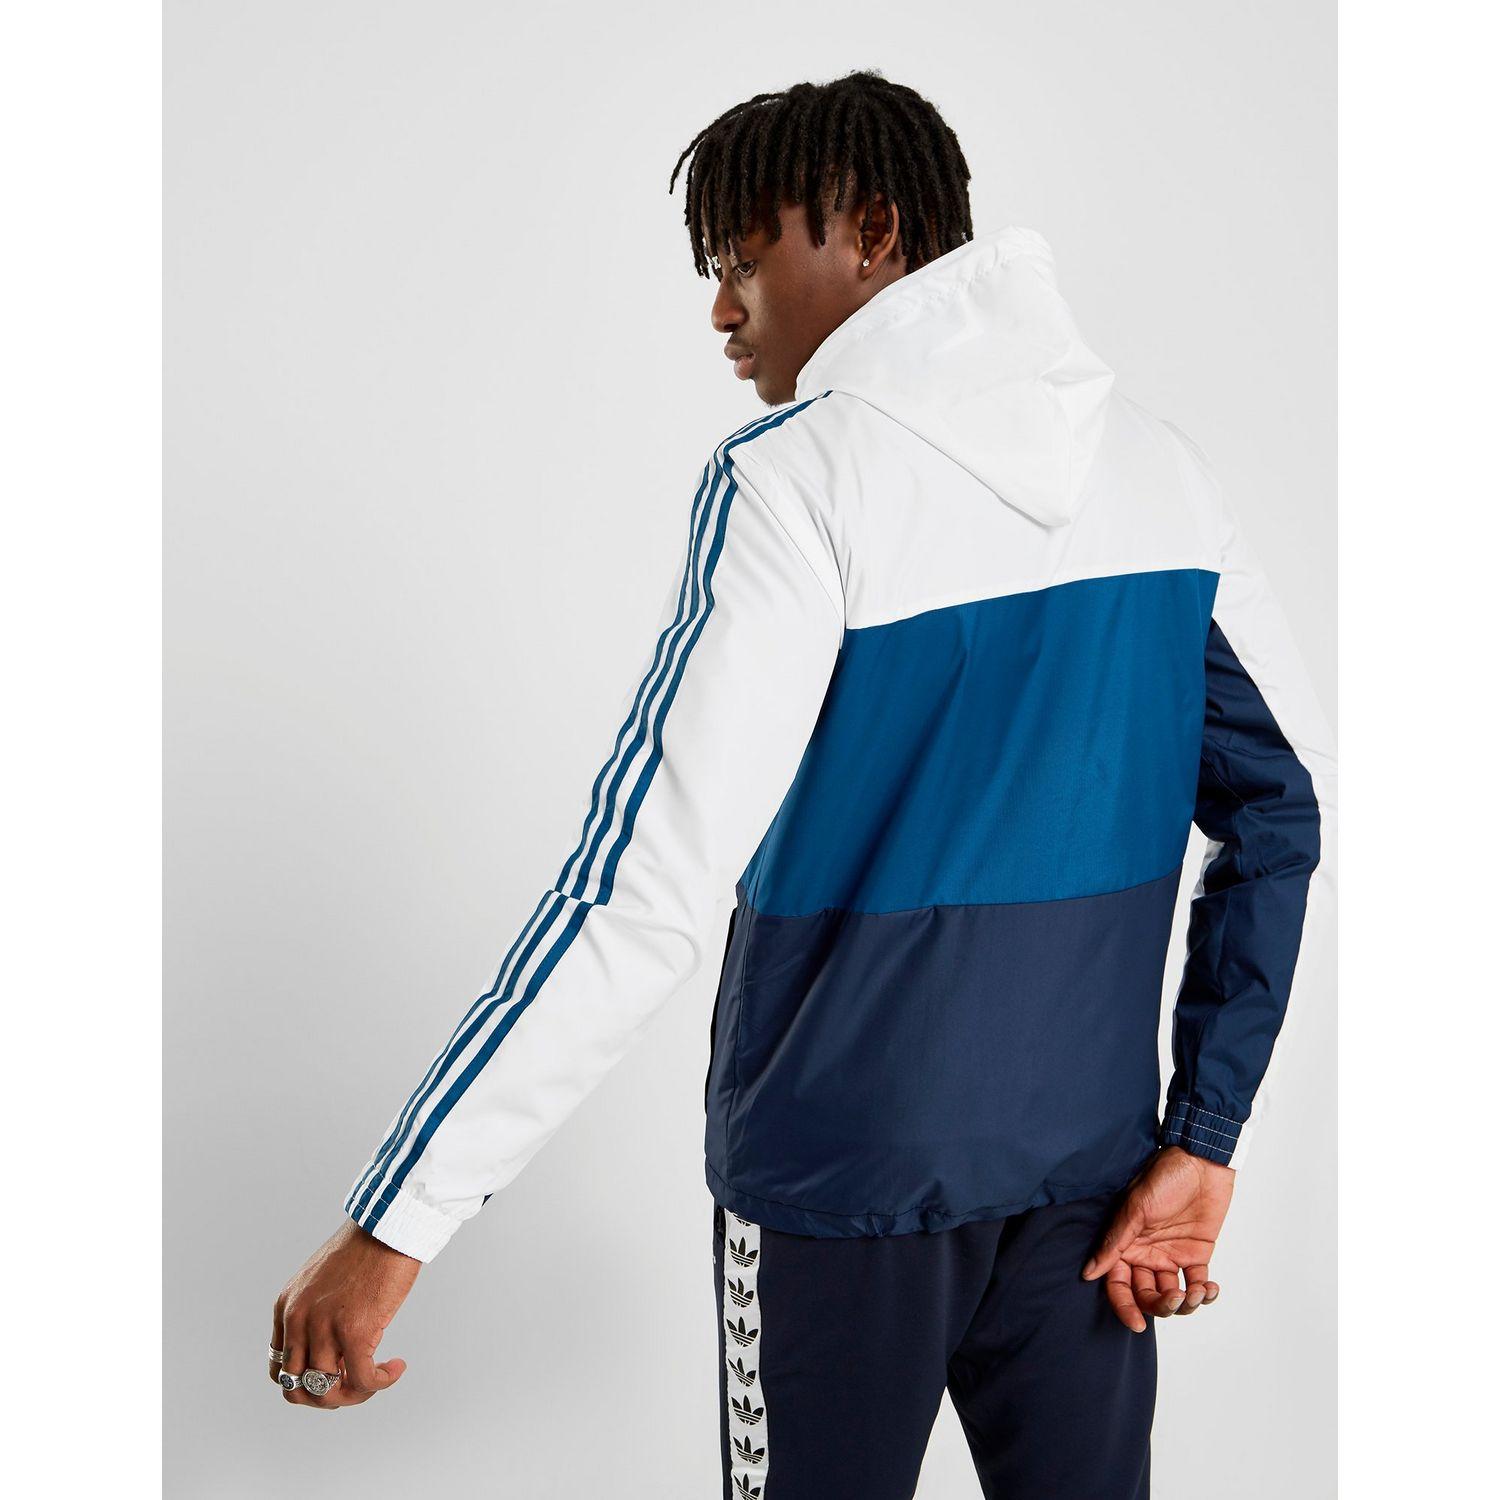 adidas id96 windbreaker jacket